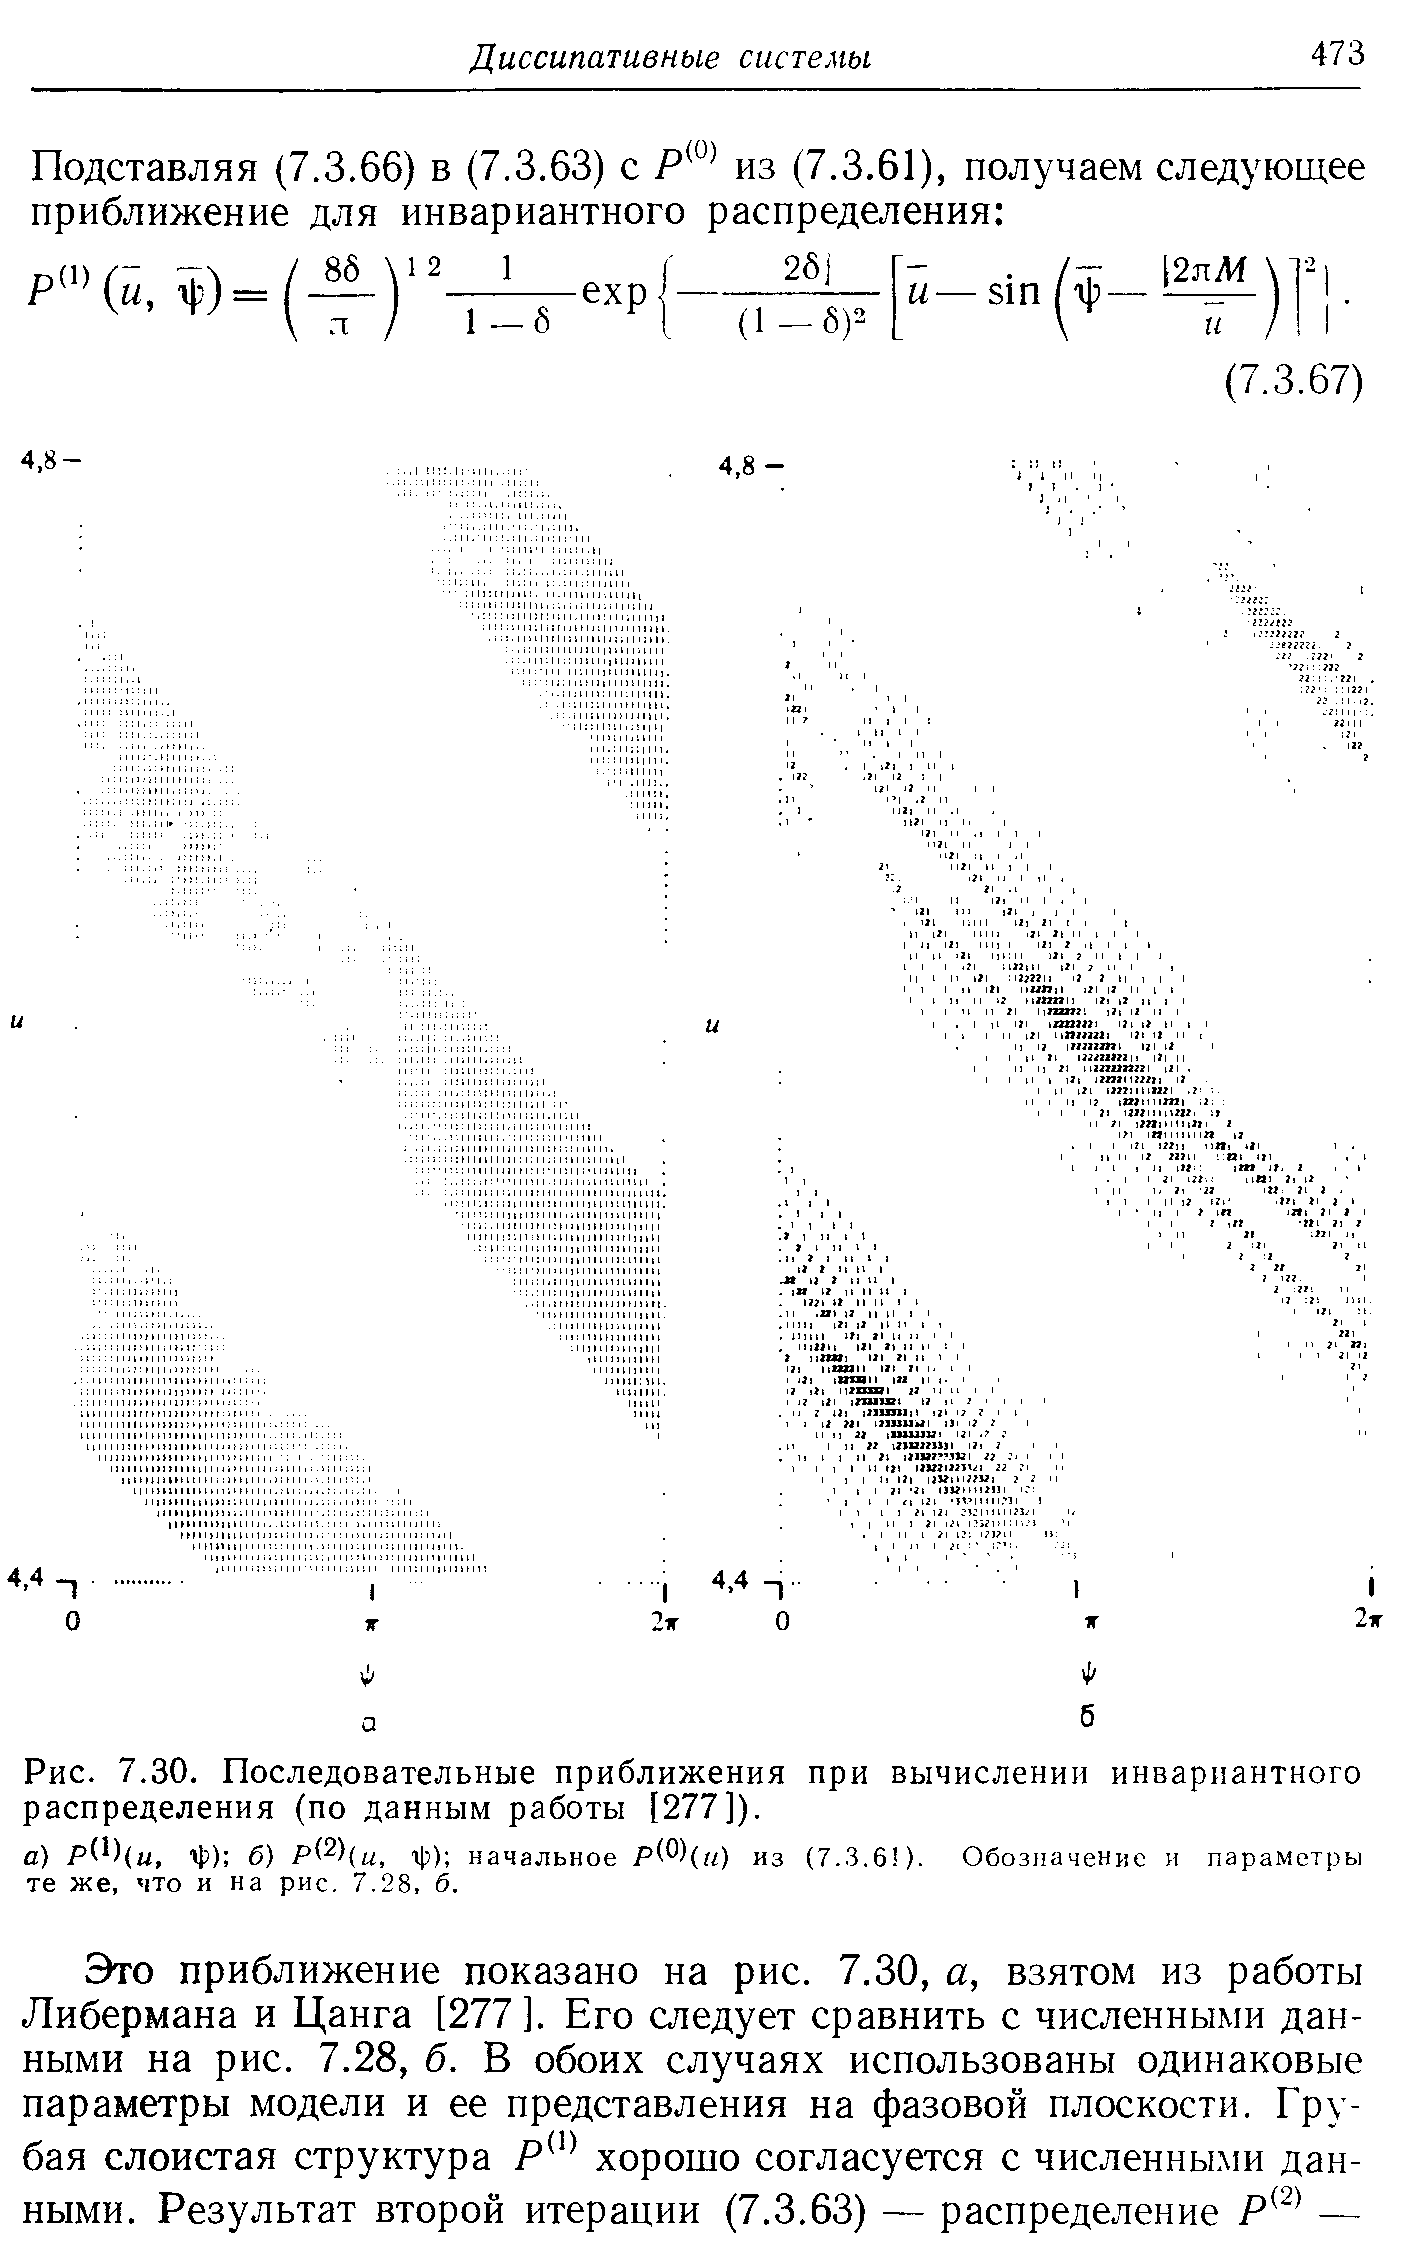 Рис. 7.30. Последовательные приближения при вычислении инвариантного распределения (по данным работы [277]).
